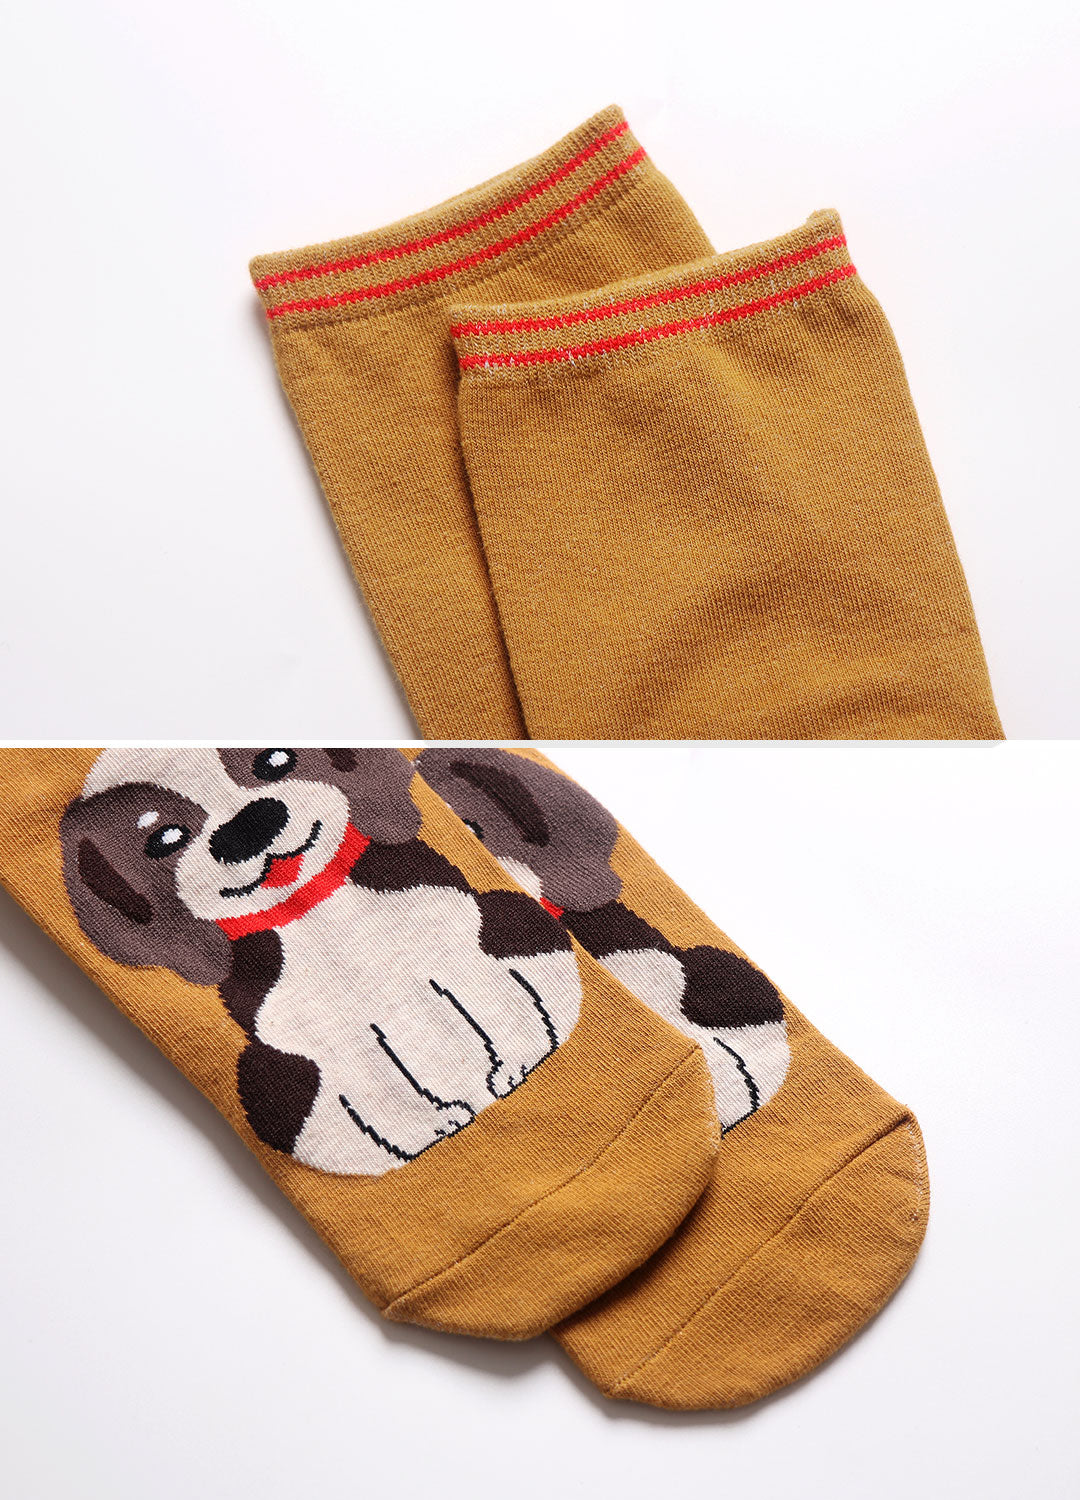 LOFIR 81925-MX-5 pack dog socks